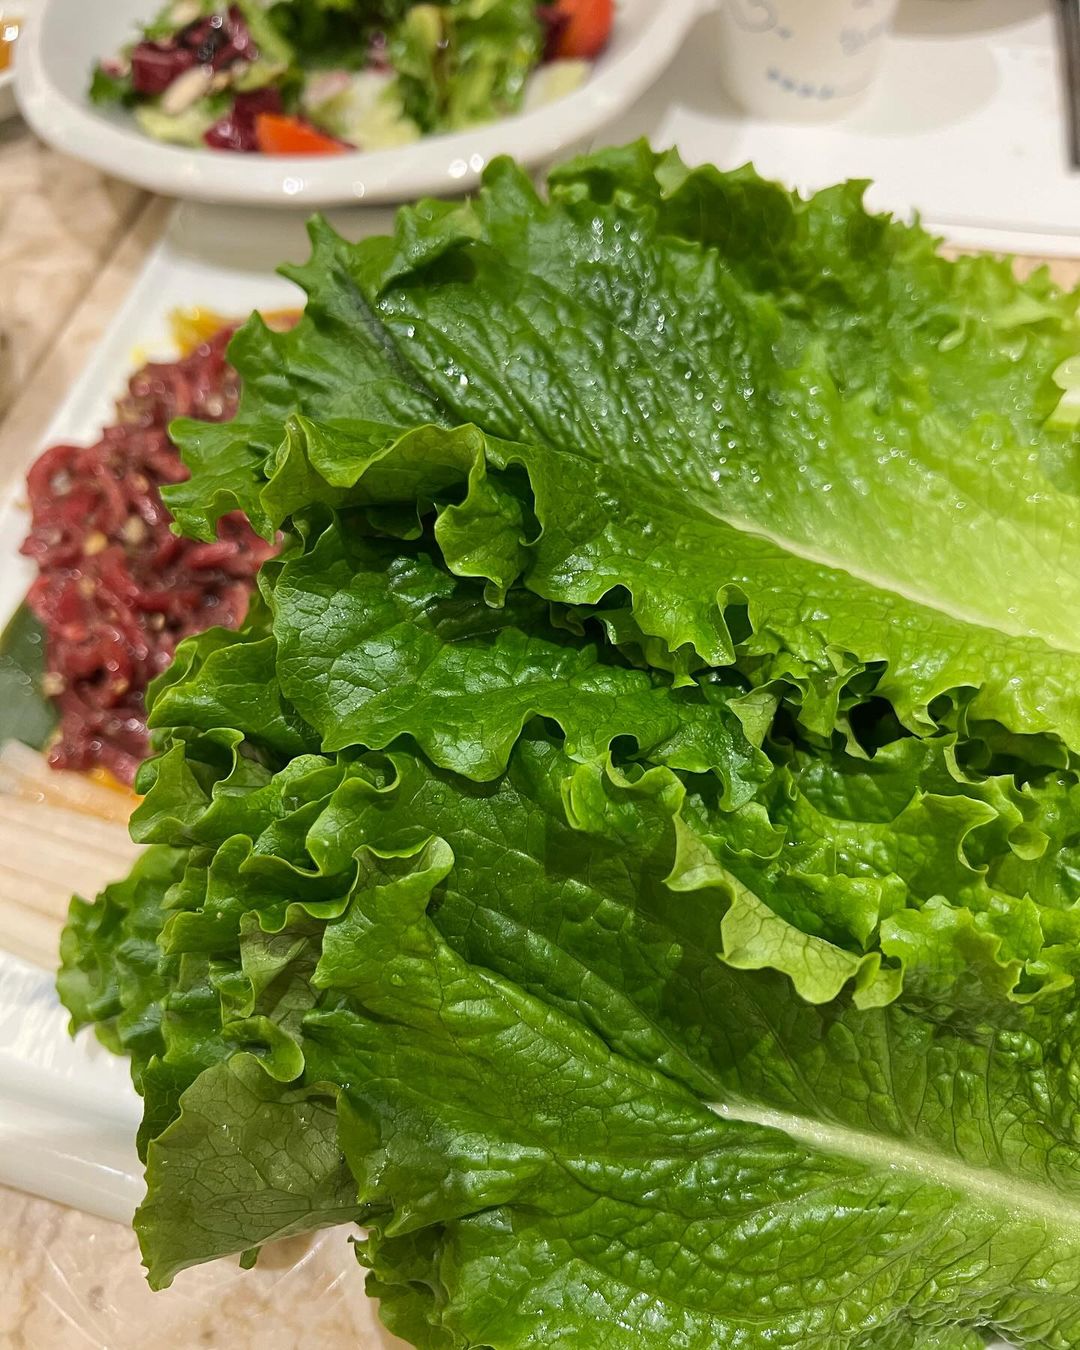 “Это сложно, но возможно”. Ким Мин Сок из MeloMance похудел на 25 кг съедая по 40 листьев салата за раз